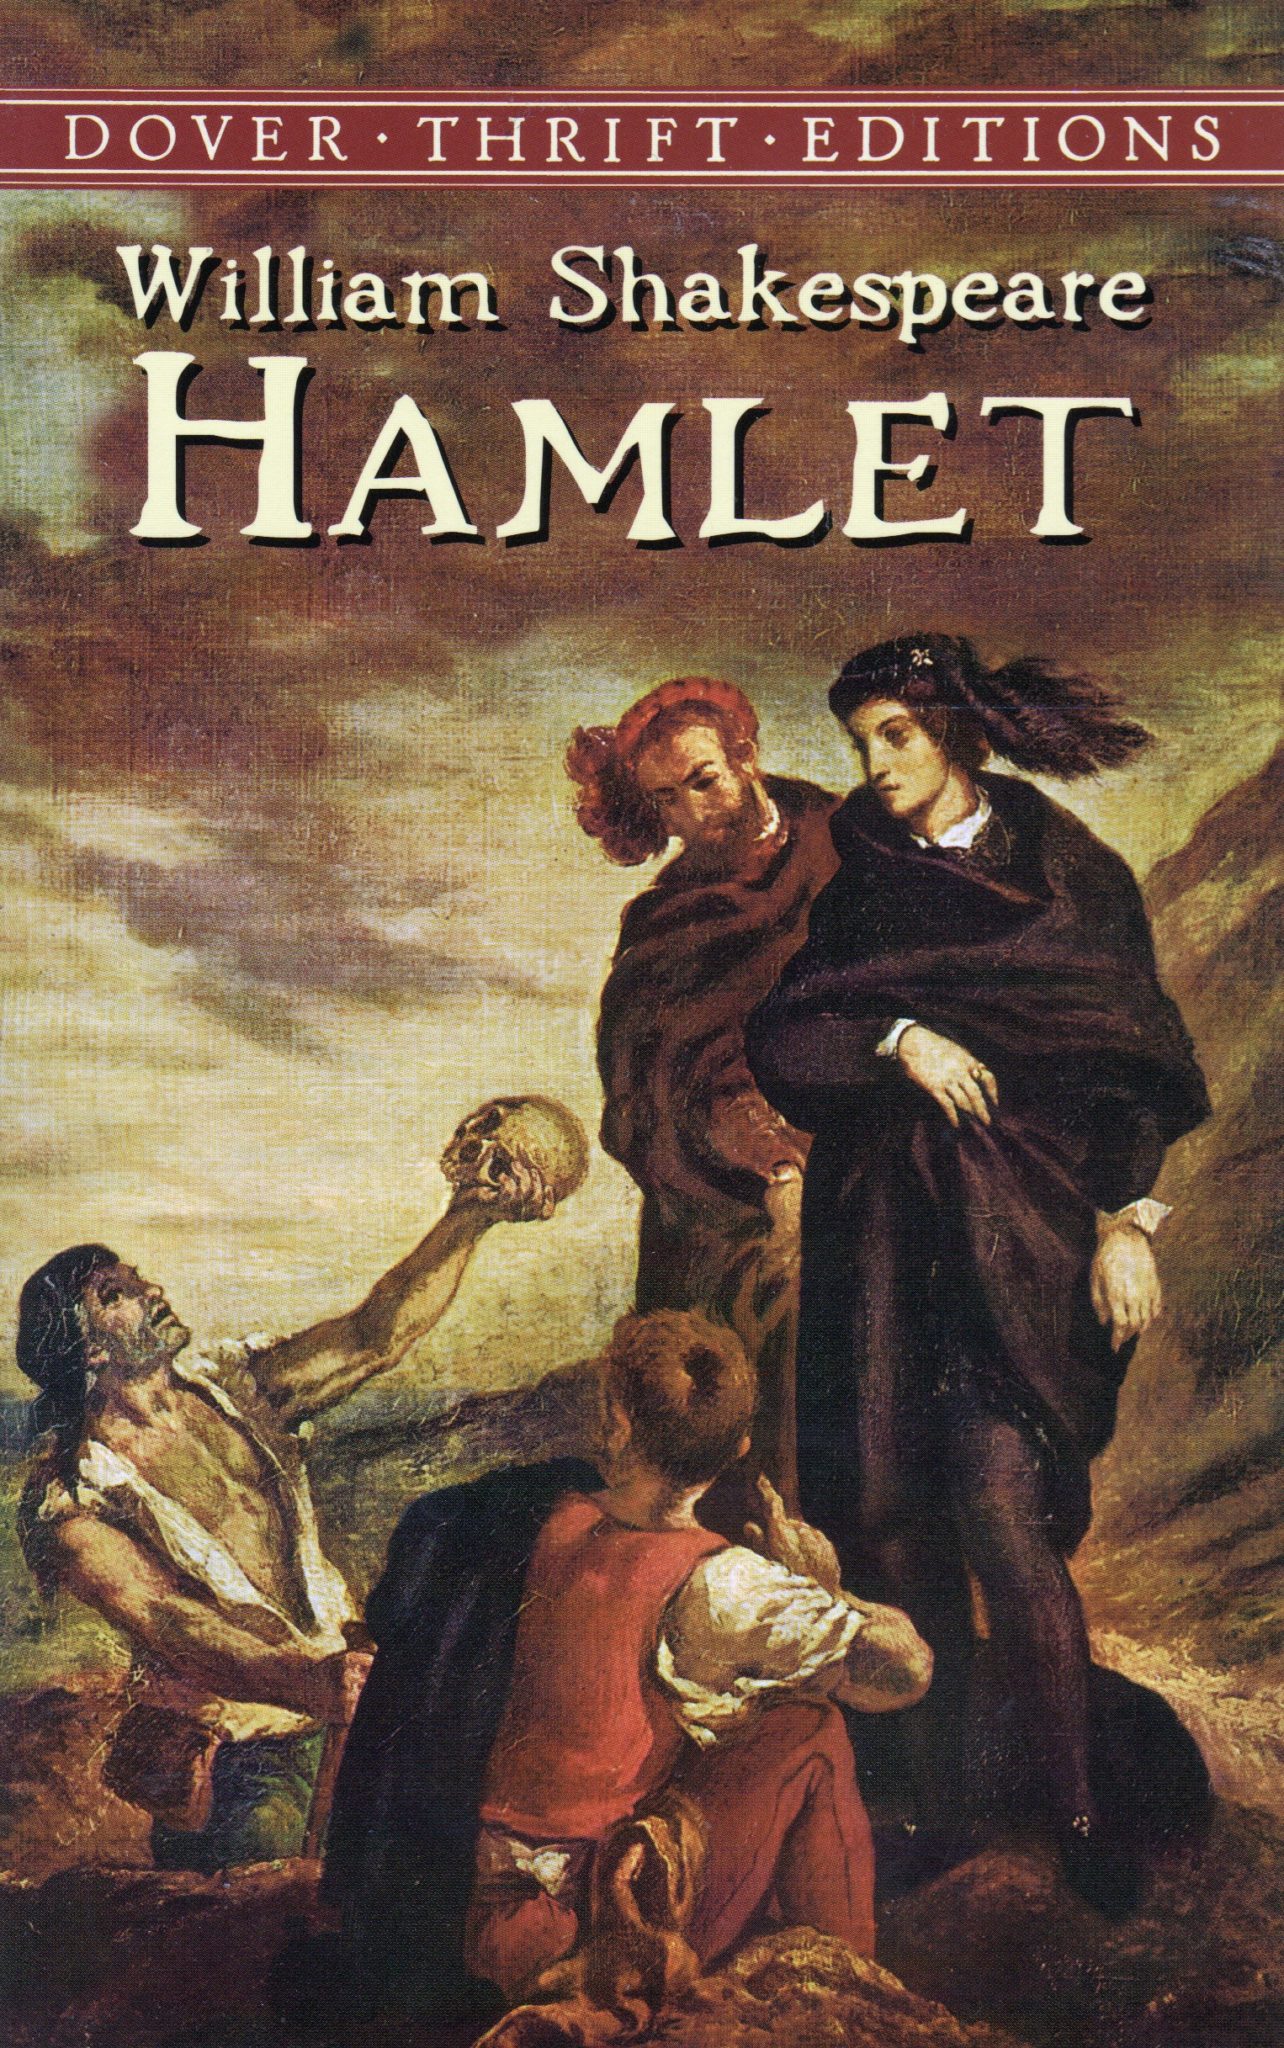 Hamlet 1284x2048 